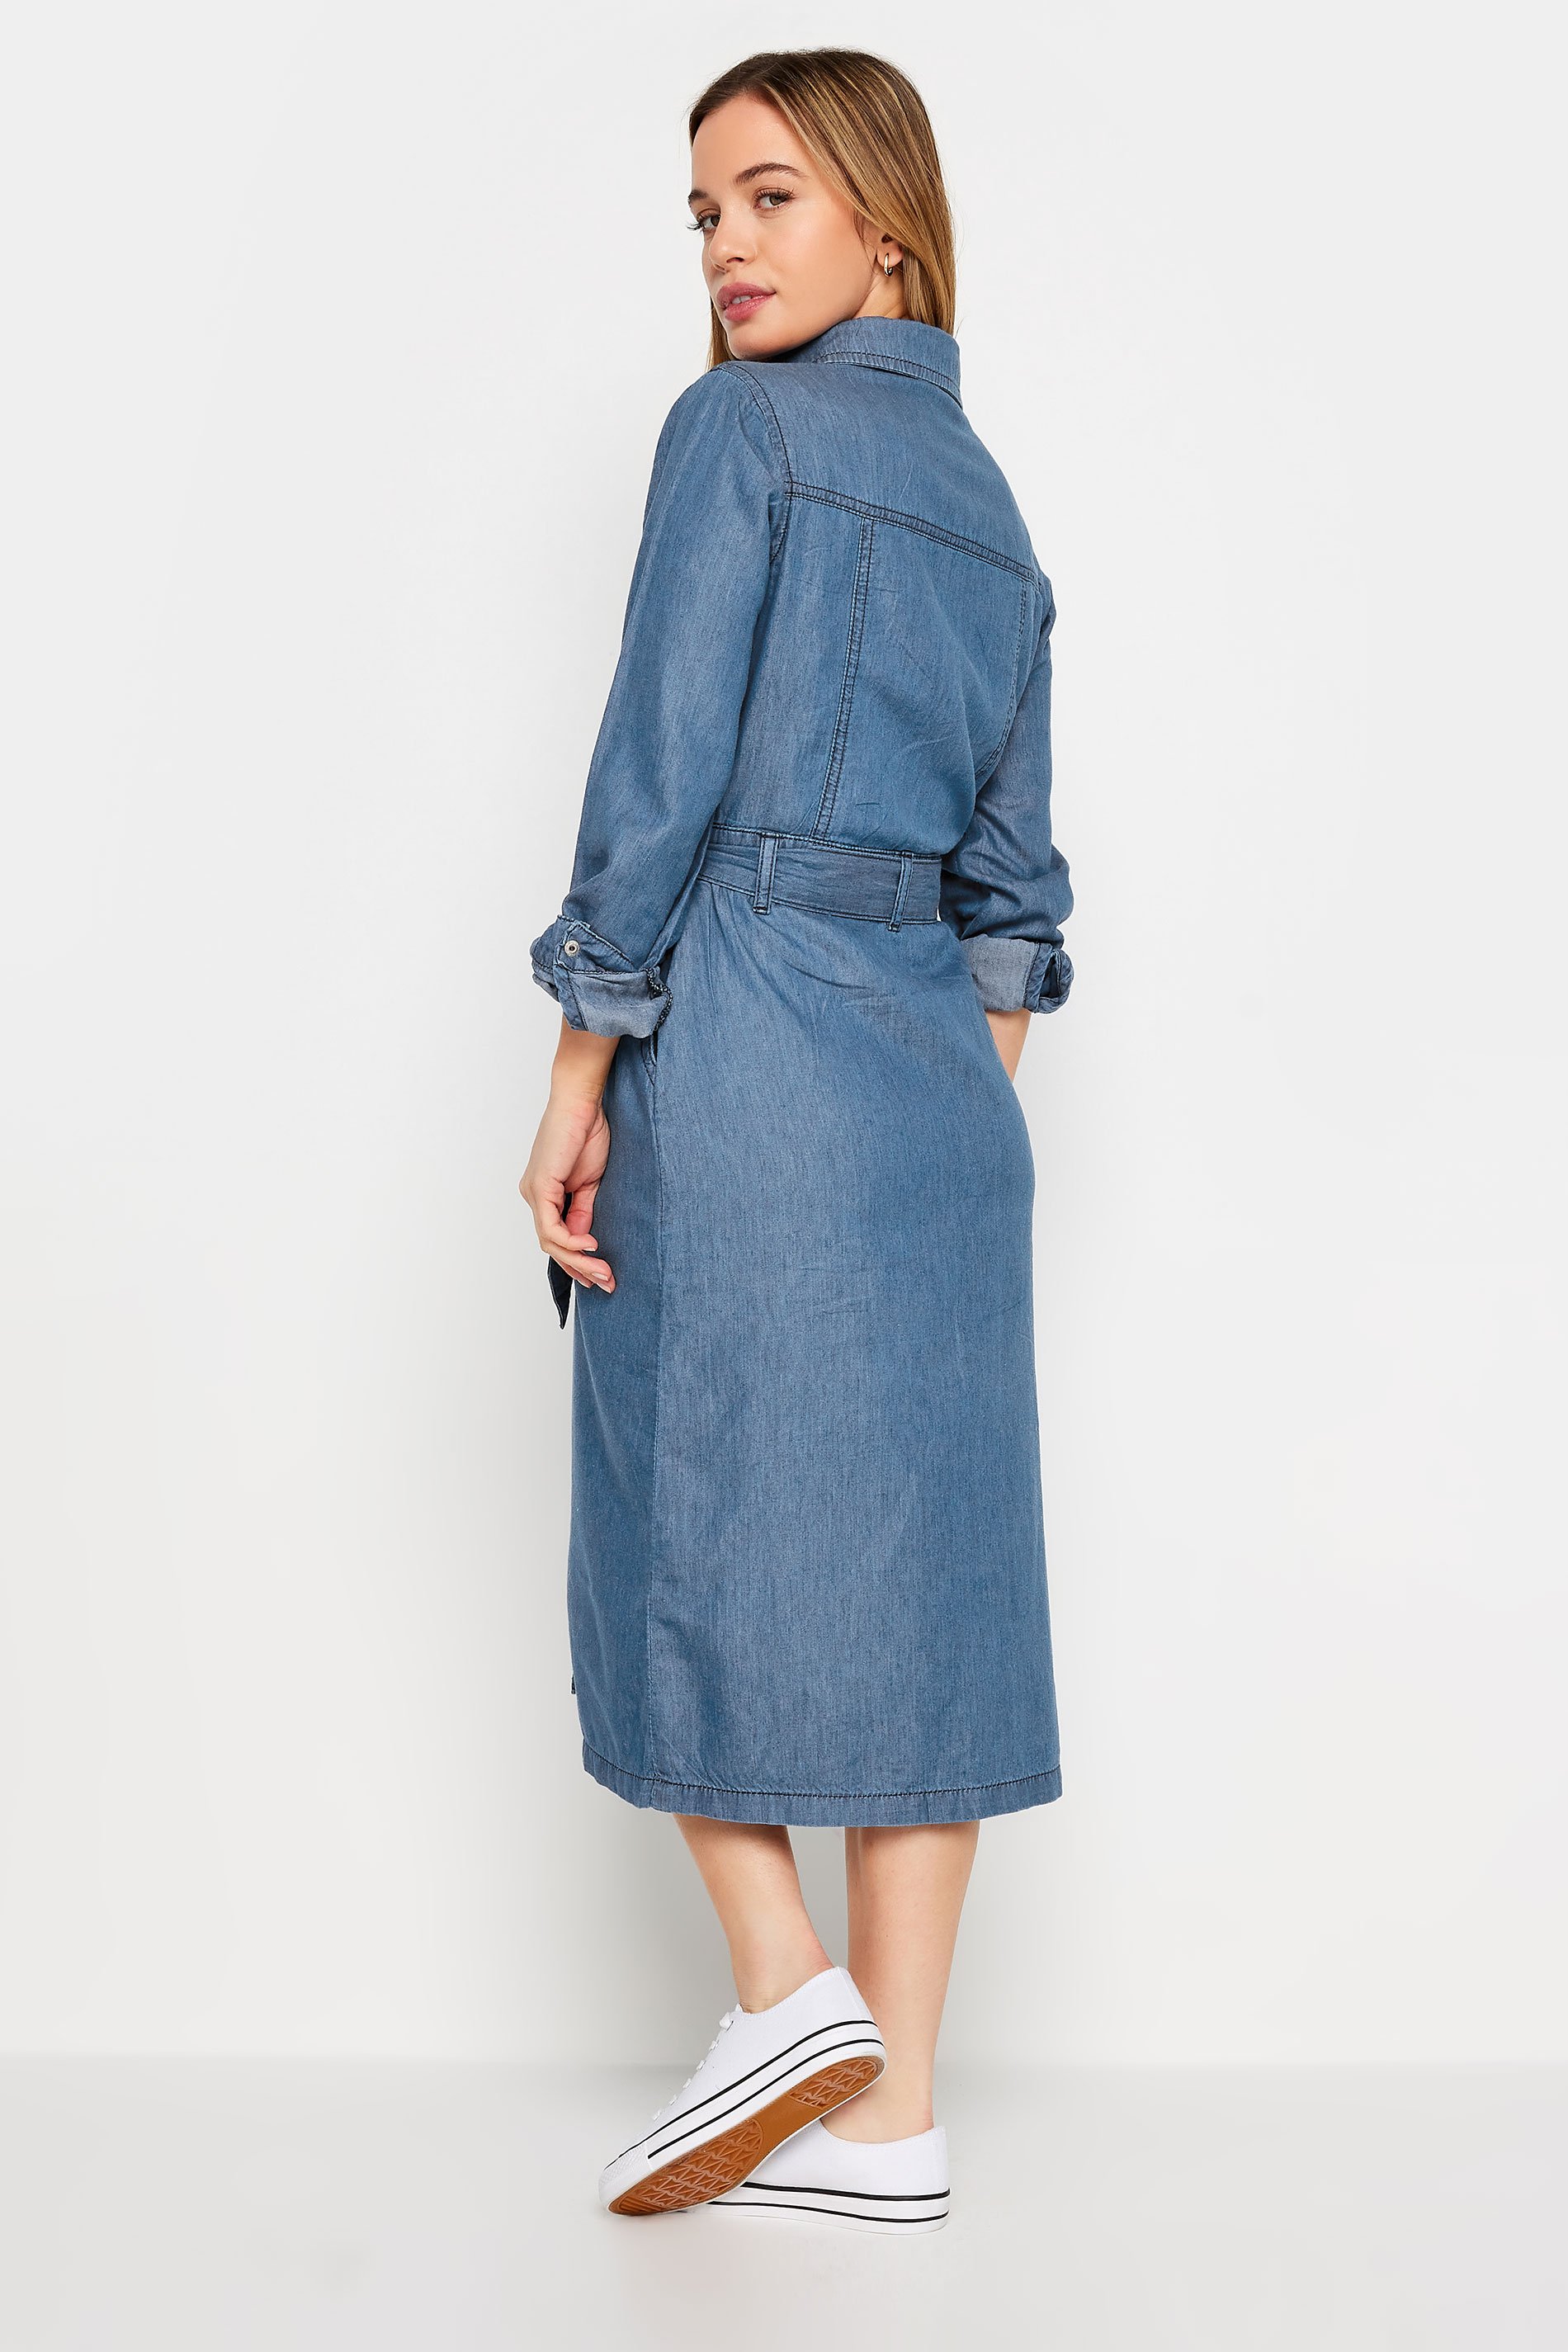 M&Co Petite Blue Tencel Denim Midi Dress | M&Co 3